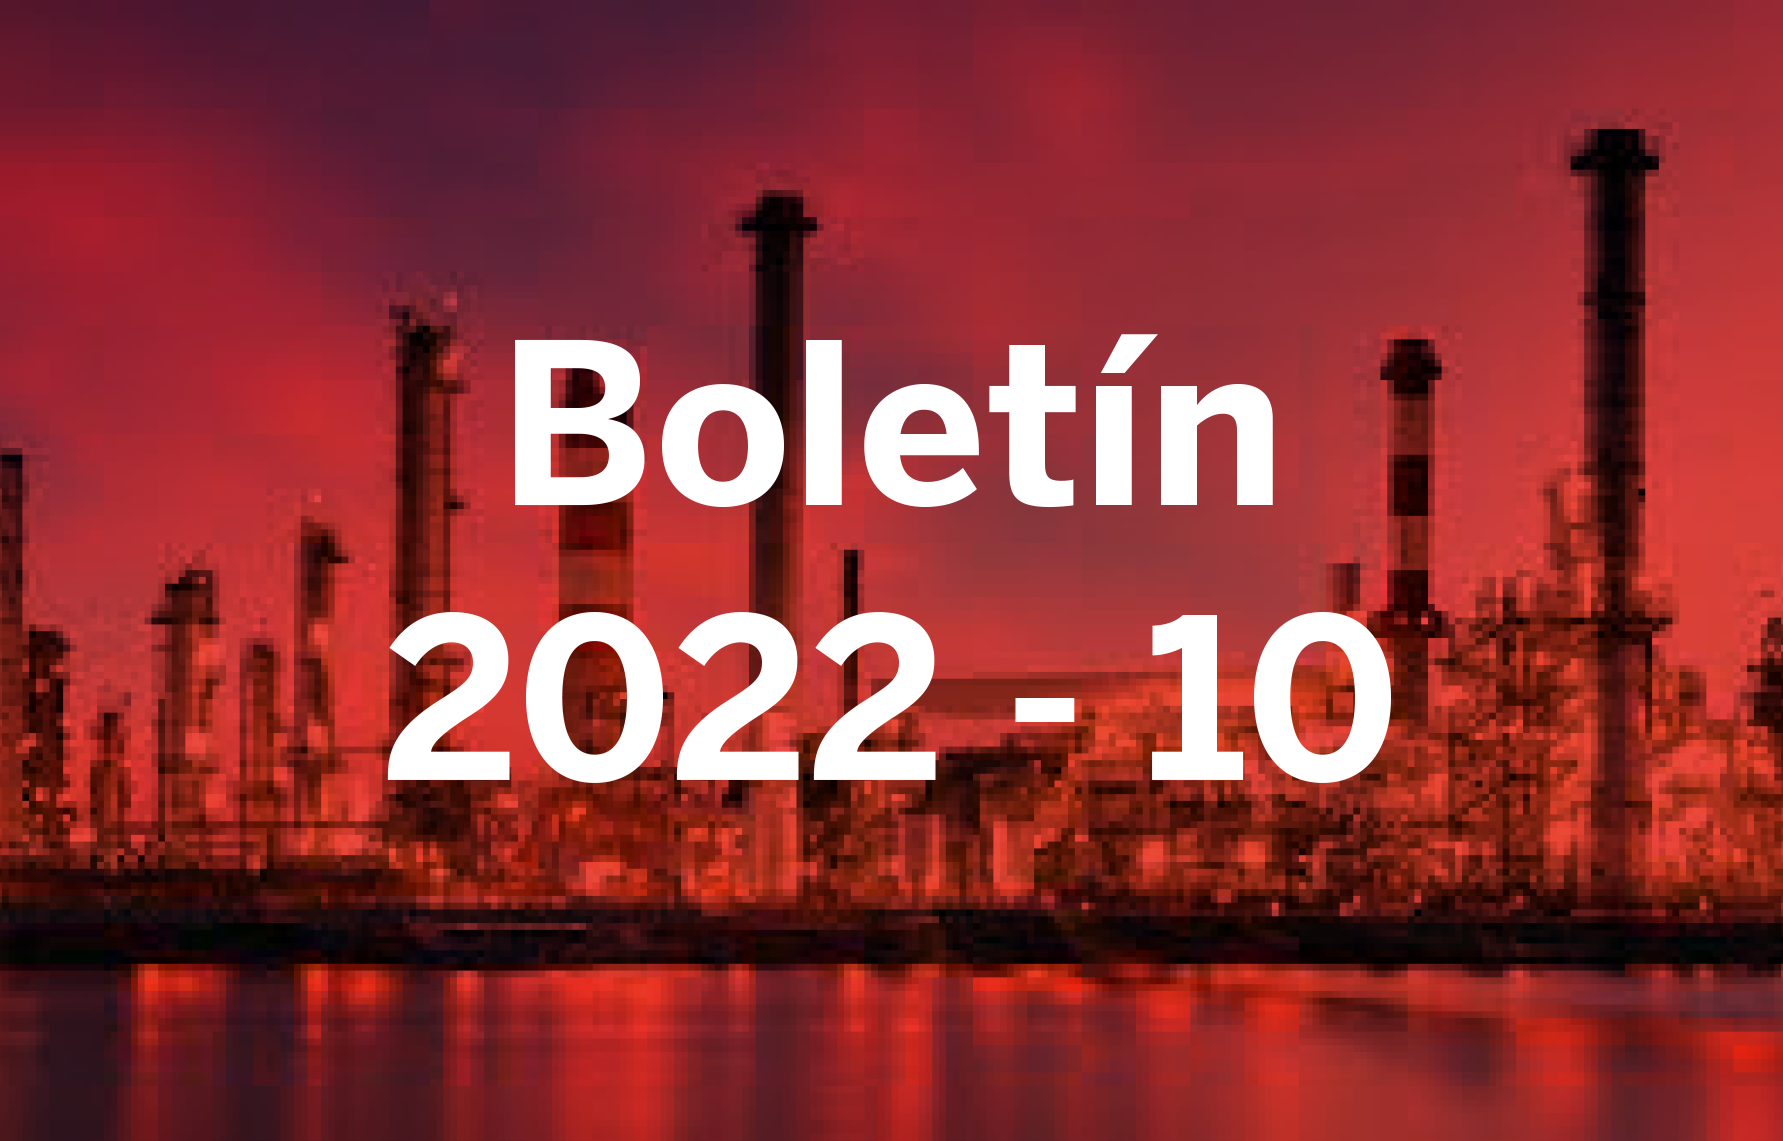 Boletín 2022 - 10